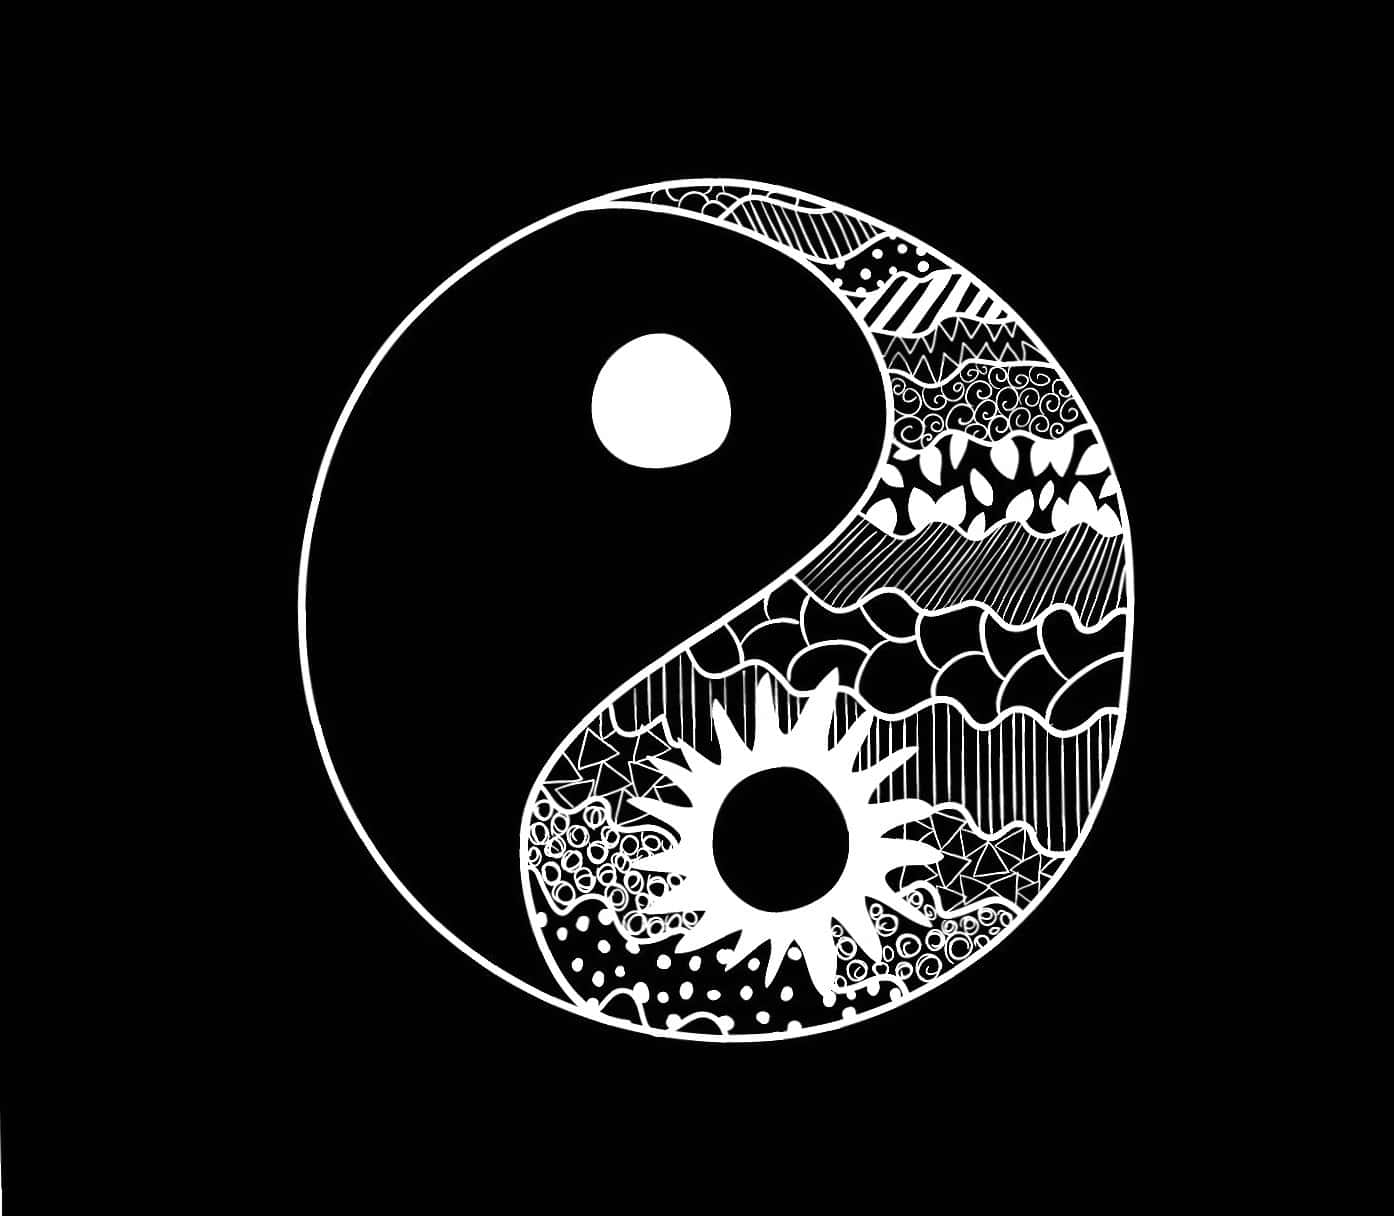 A Yin Yang Symbol Representing Balance and Coexistence